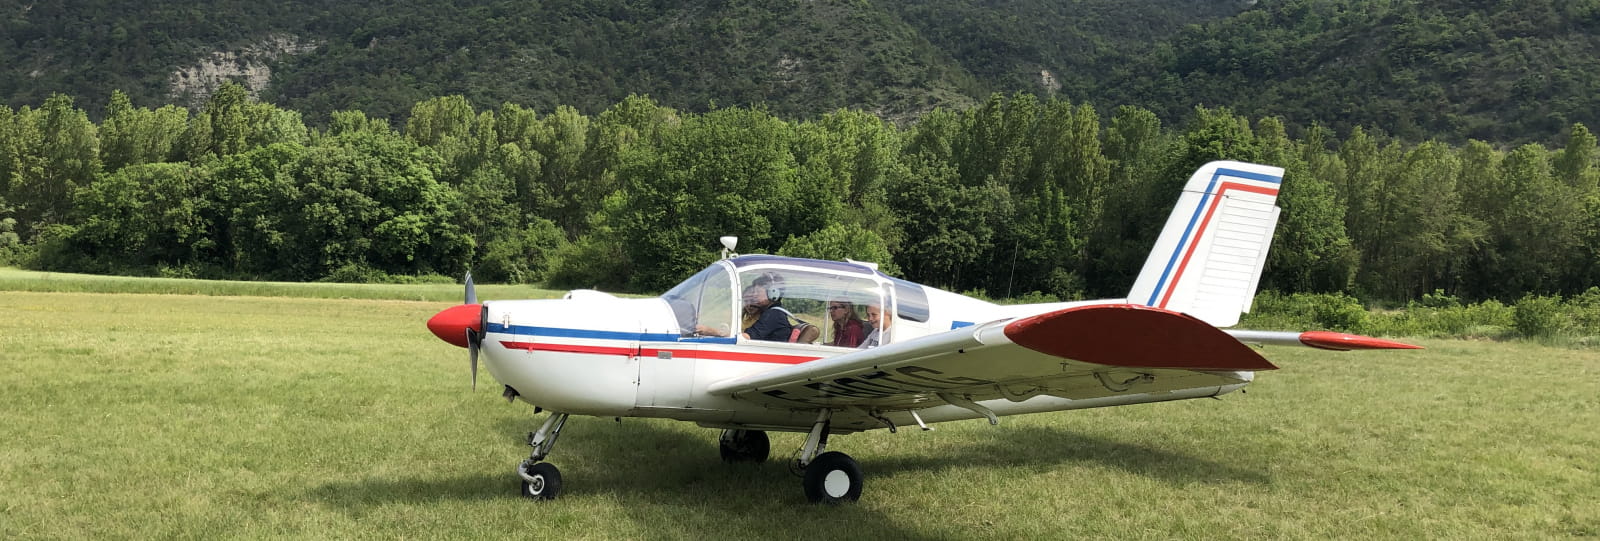 Vol en avion et planeur avec l'association aéronautique de Rochecourbe